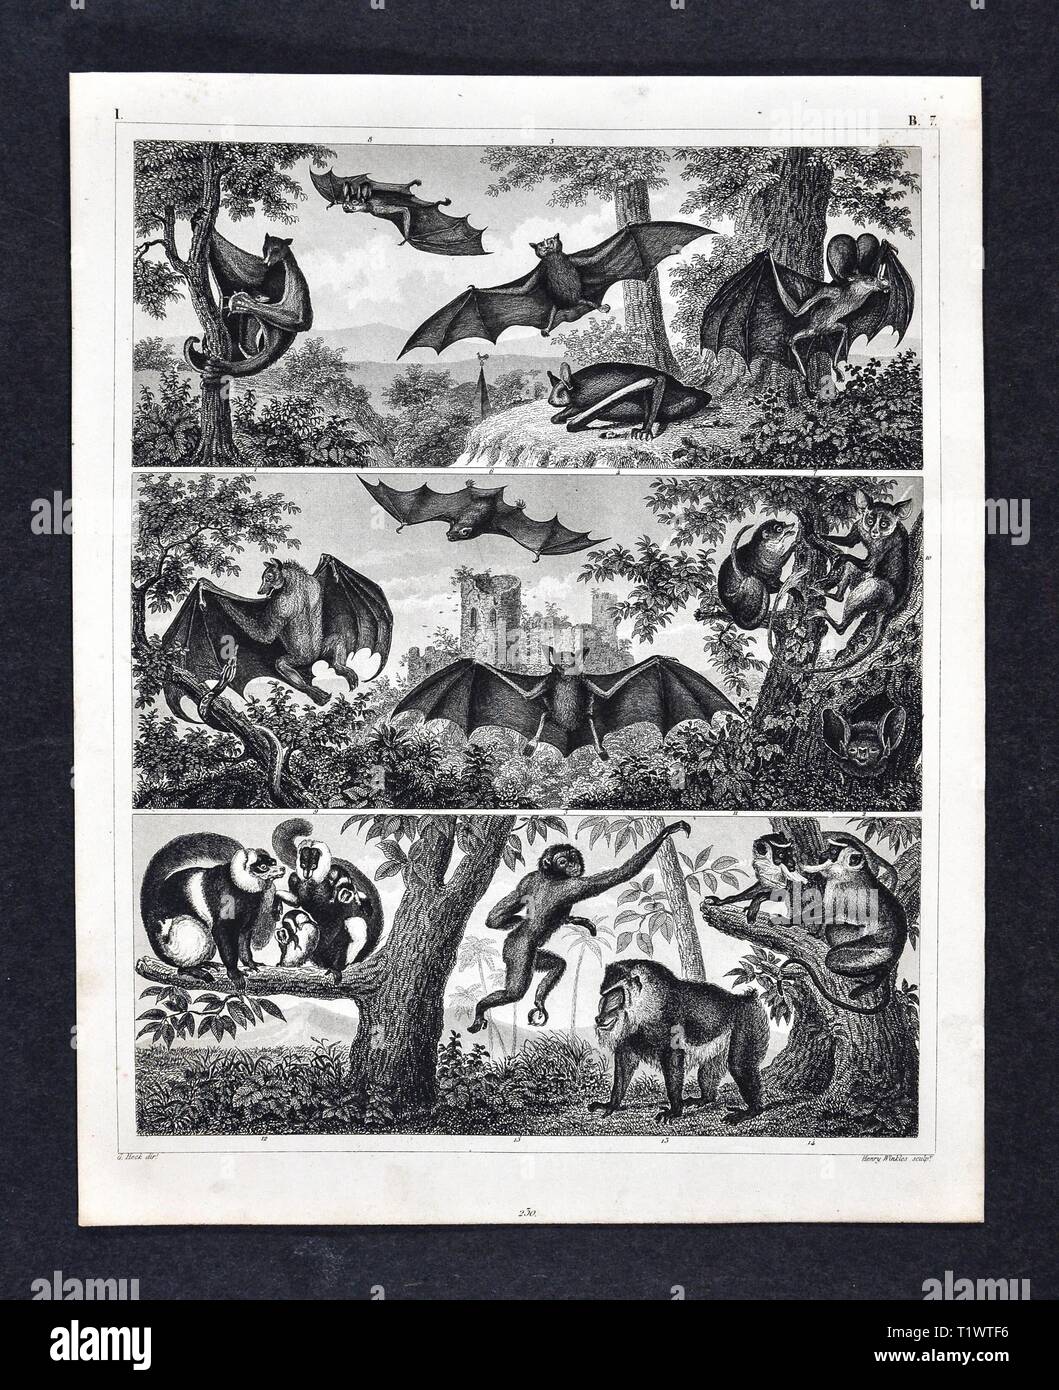 1849 - Impression zoologique La faune Les animaux - mammifères - Les chauves-souris et les singes Banque D'Images